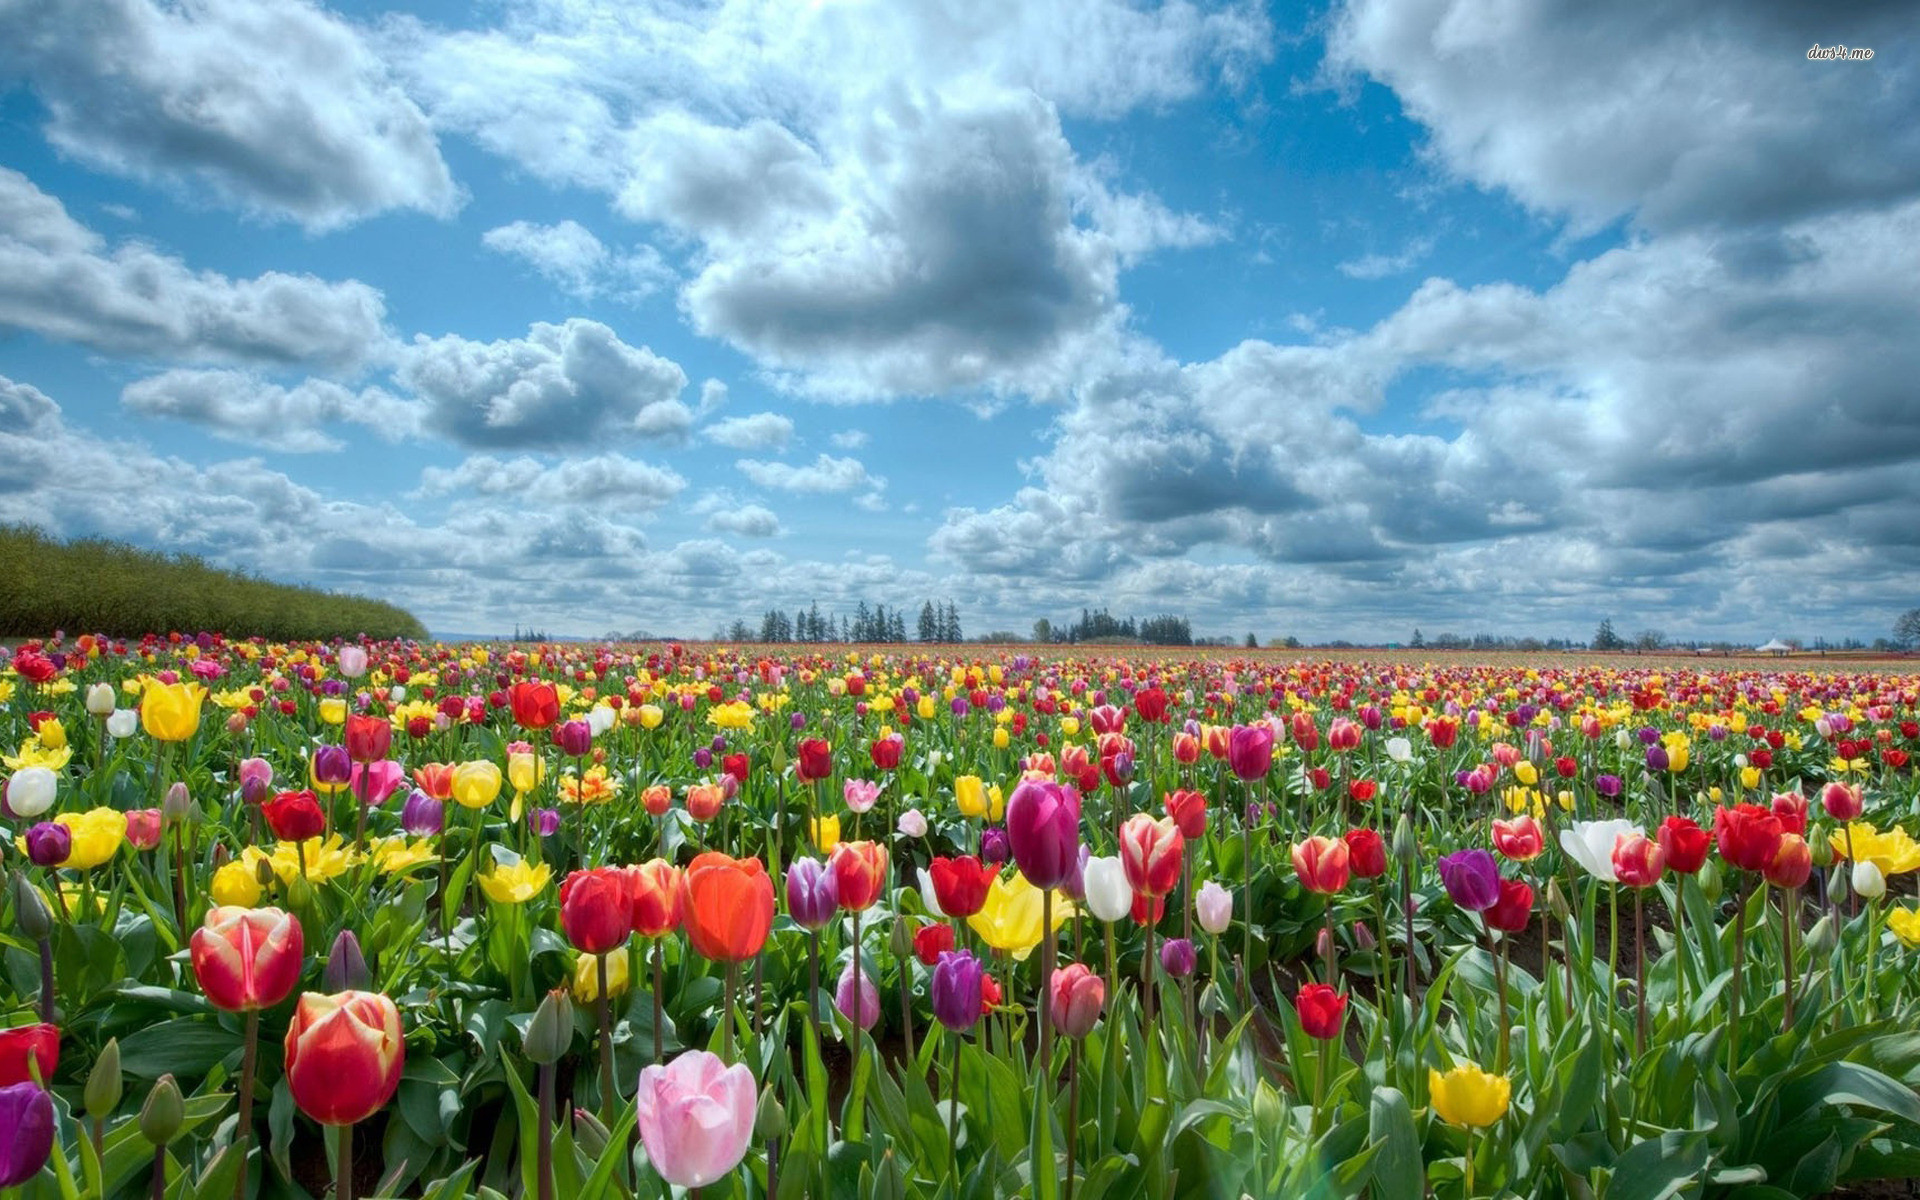 Tulips wallpapers - Những bức ảnh tulips wallpapers sẽ mang đến cho bạn cảm giác thanh lịch và trang nhã. Sắc hồng, trắng, đỏ hoặc vàng, hãy để những bông hoa tulip truyền cảm hứng và tinh thần cho bạn mỗi khi nhìn vào màn hình điện thoại hoặc máy tính.